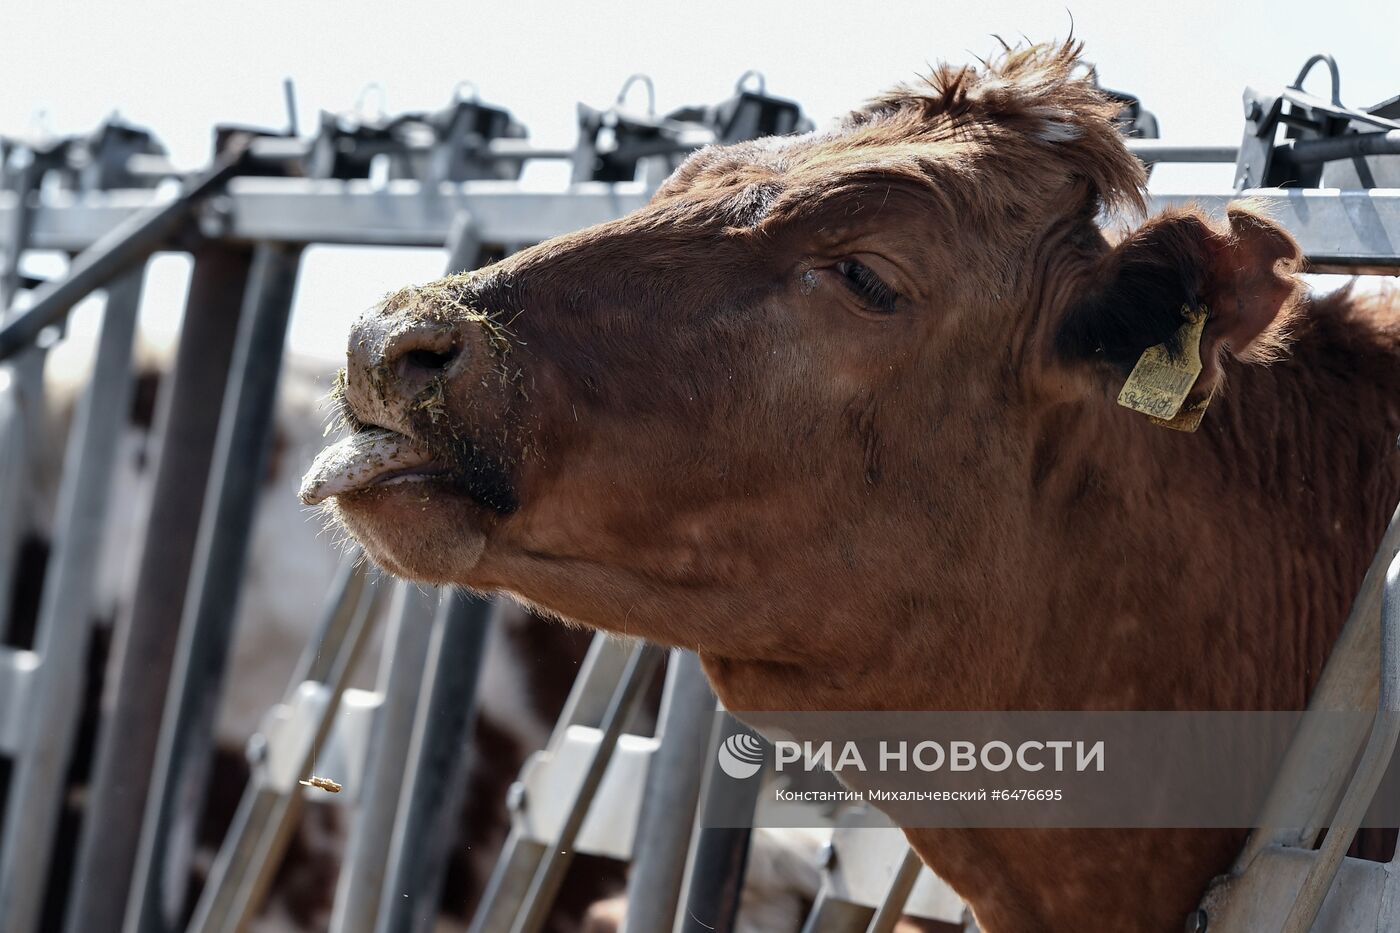 Животноводческое хозяйство "Партизан" в Крыму